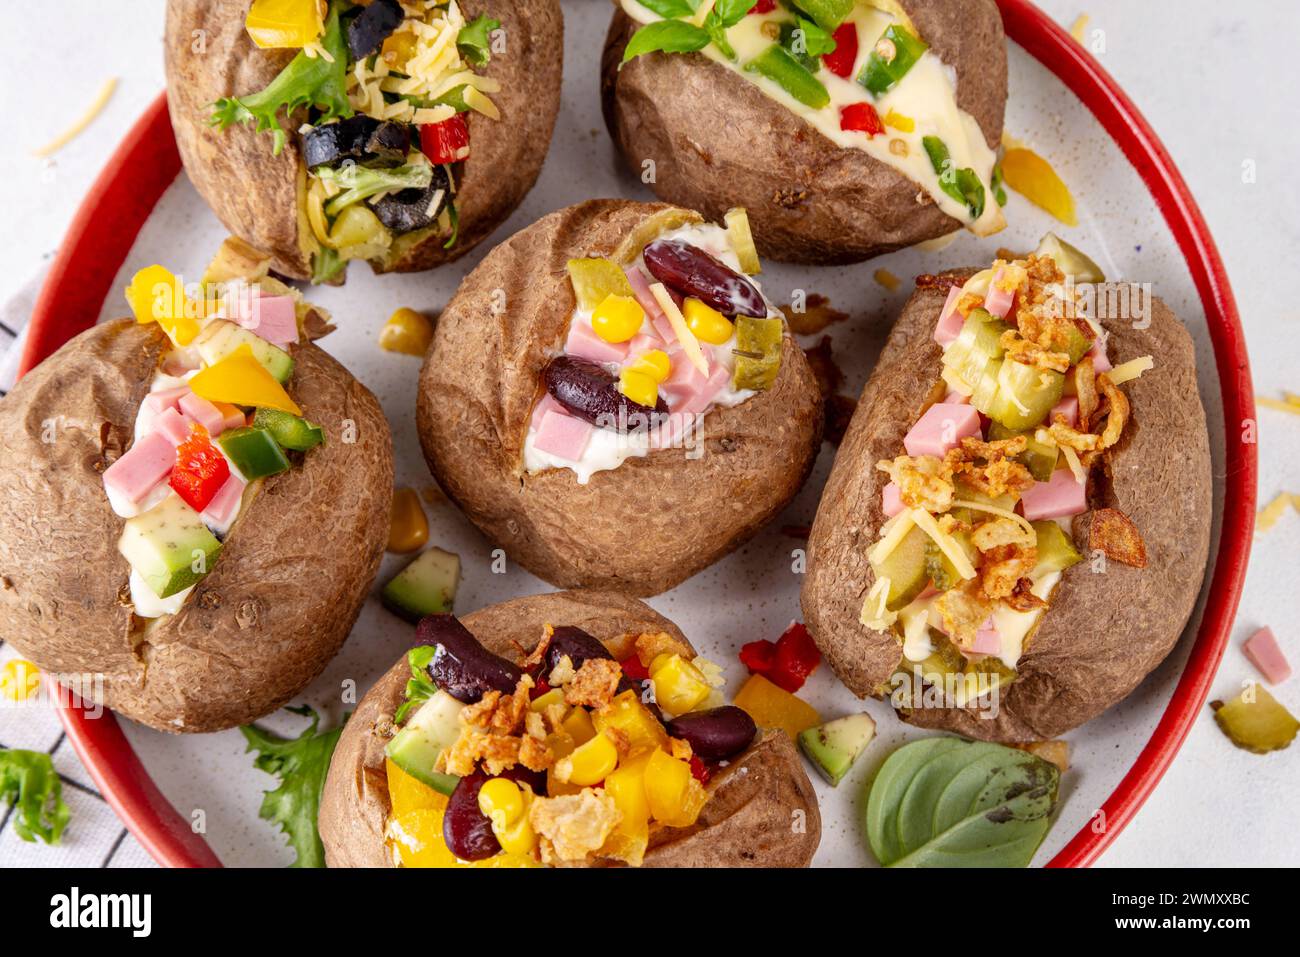 Hausgemachte Kartoffel mit verschiedenen Belägen - Fleisch, Würstchen, Gemüse, Käse, mit weißer Käsesauce, Kopierraum Stockfoto